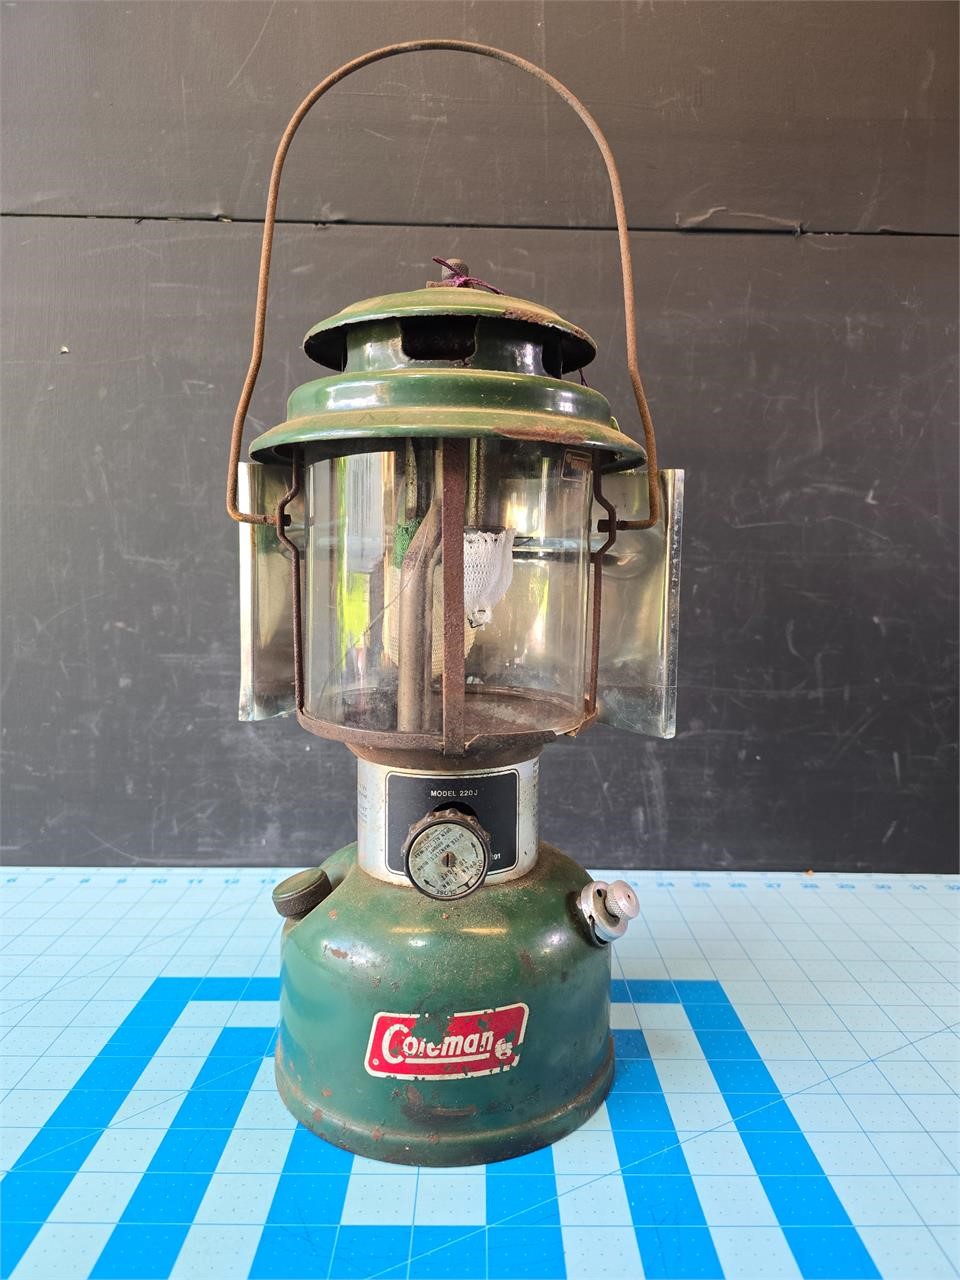 Vintage Coleman lantern glass cracked model 220J